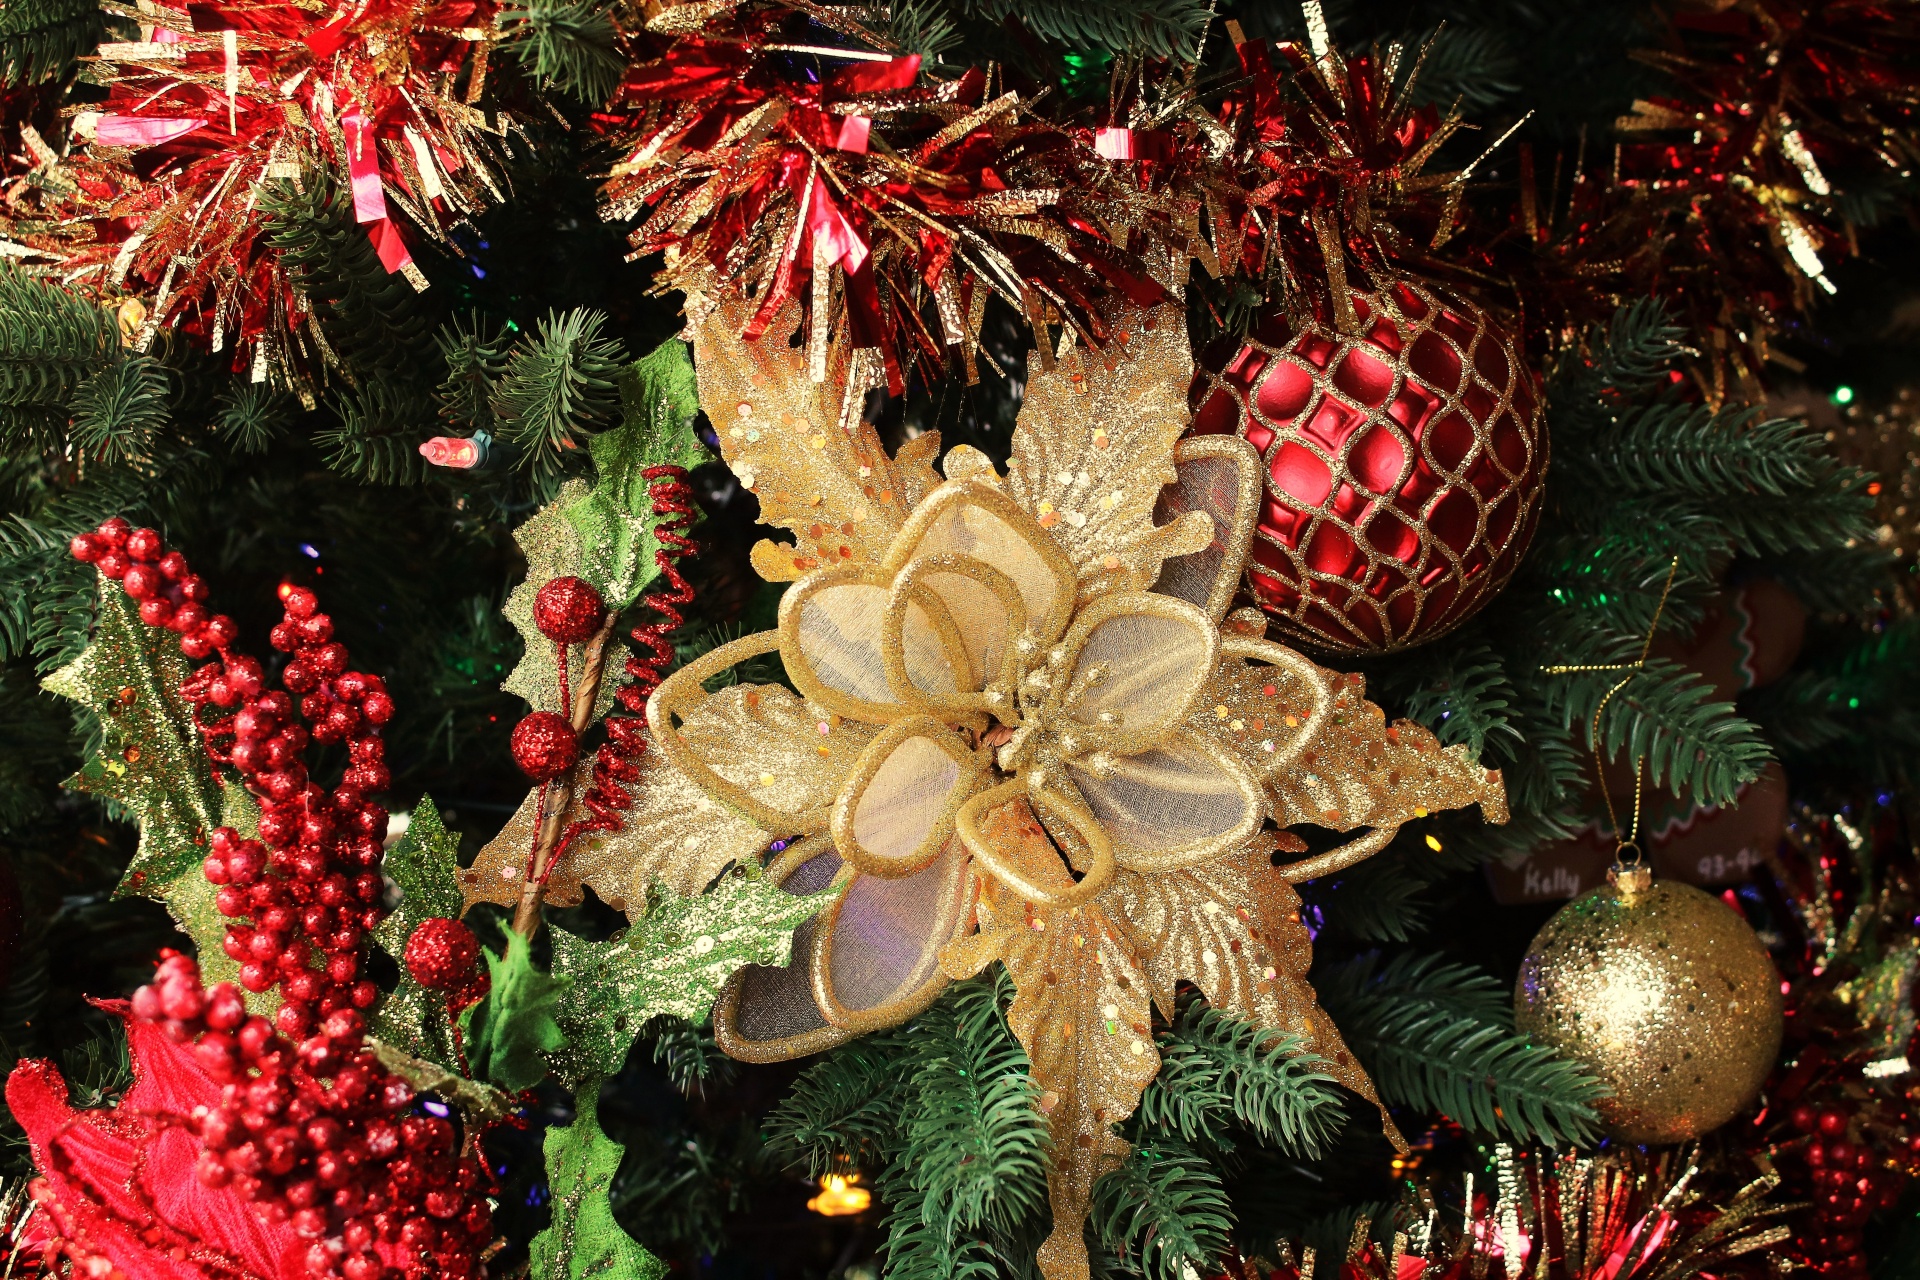 Decorazione Stella Di Natale.Decorazione Di Natale Oro Stella Di Nata Immagine Gratis Public Domain Pictures